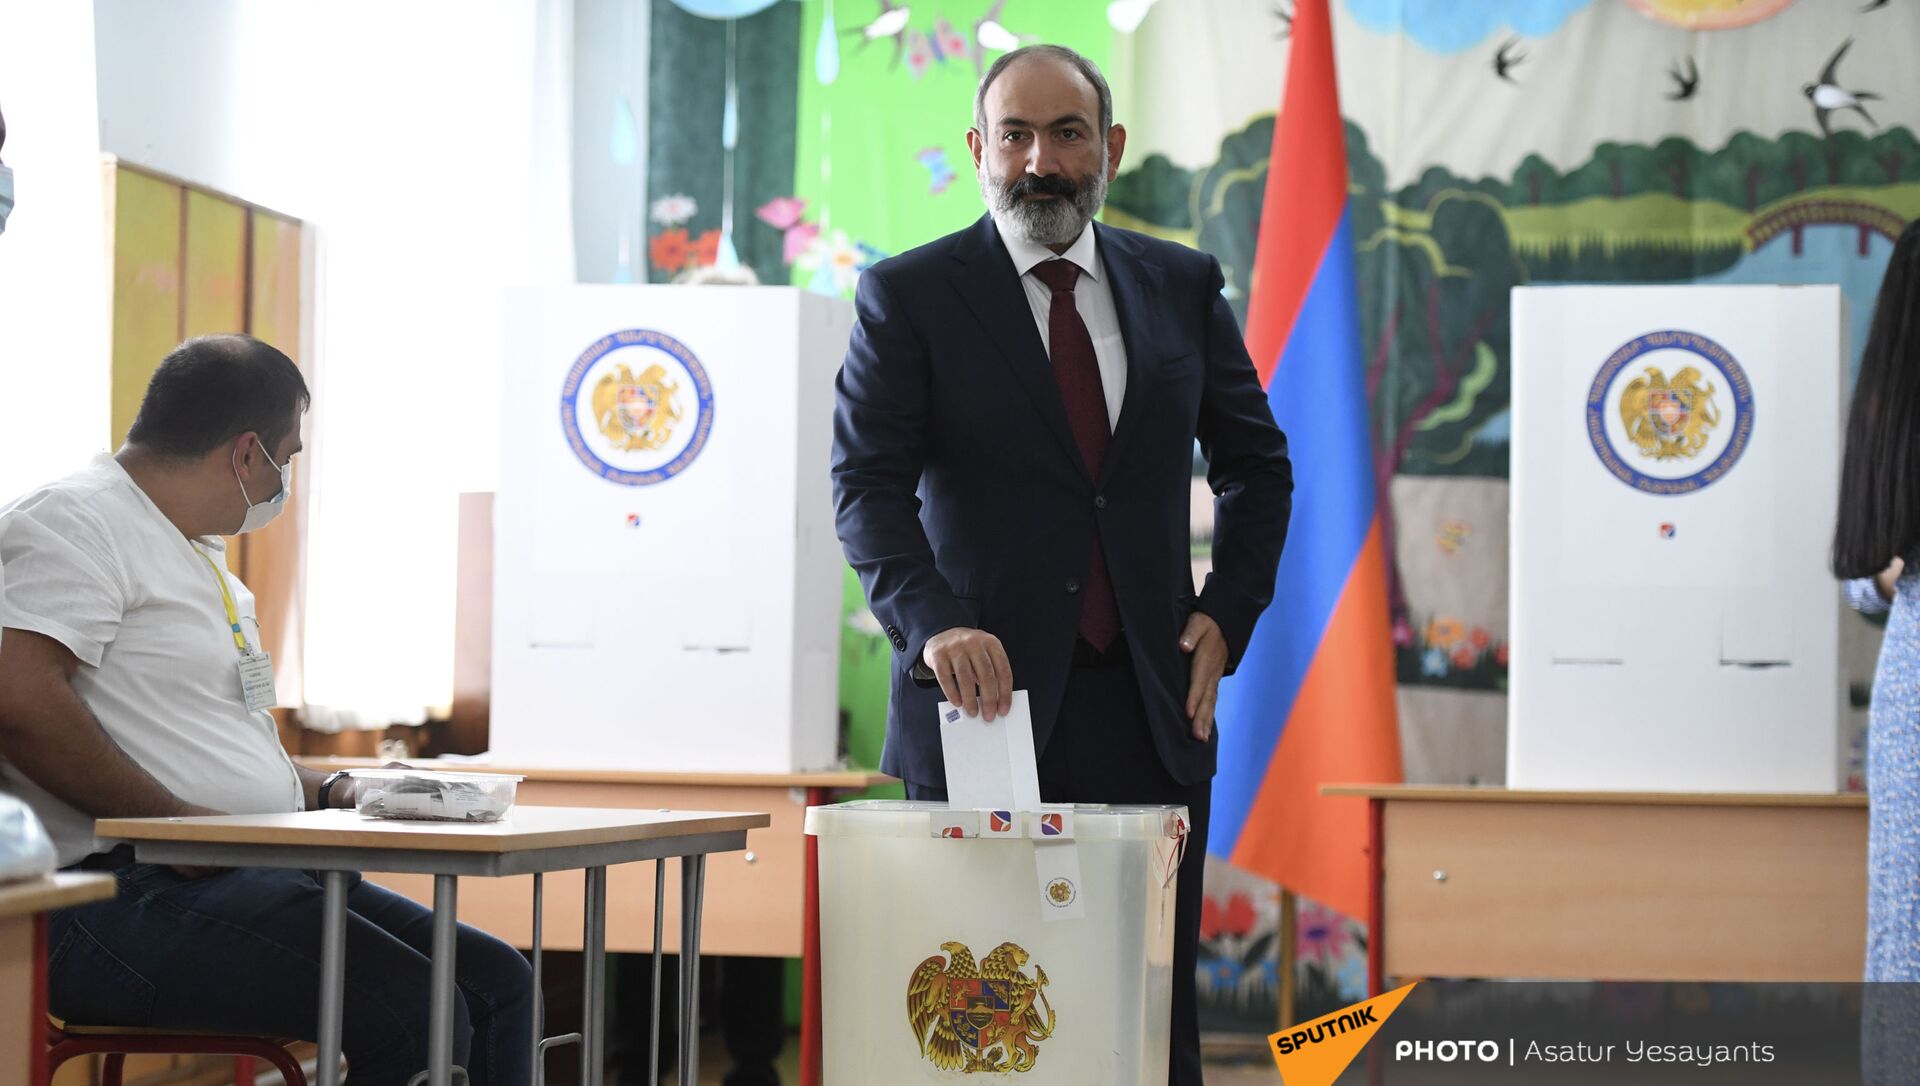 Parlamentarni izbori u Jermeniji  - Sputnik Srbija, 1920, 20.06.2021